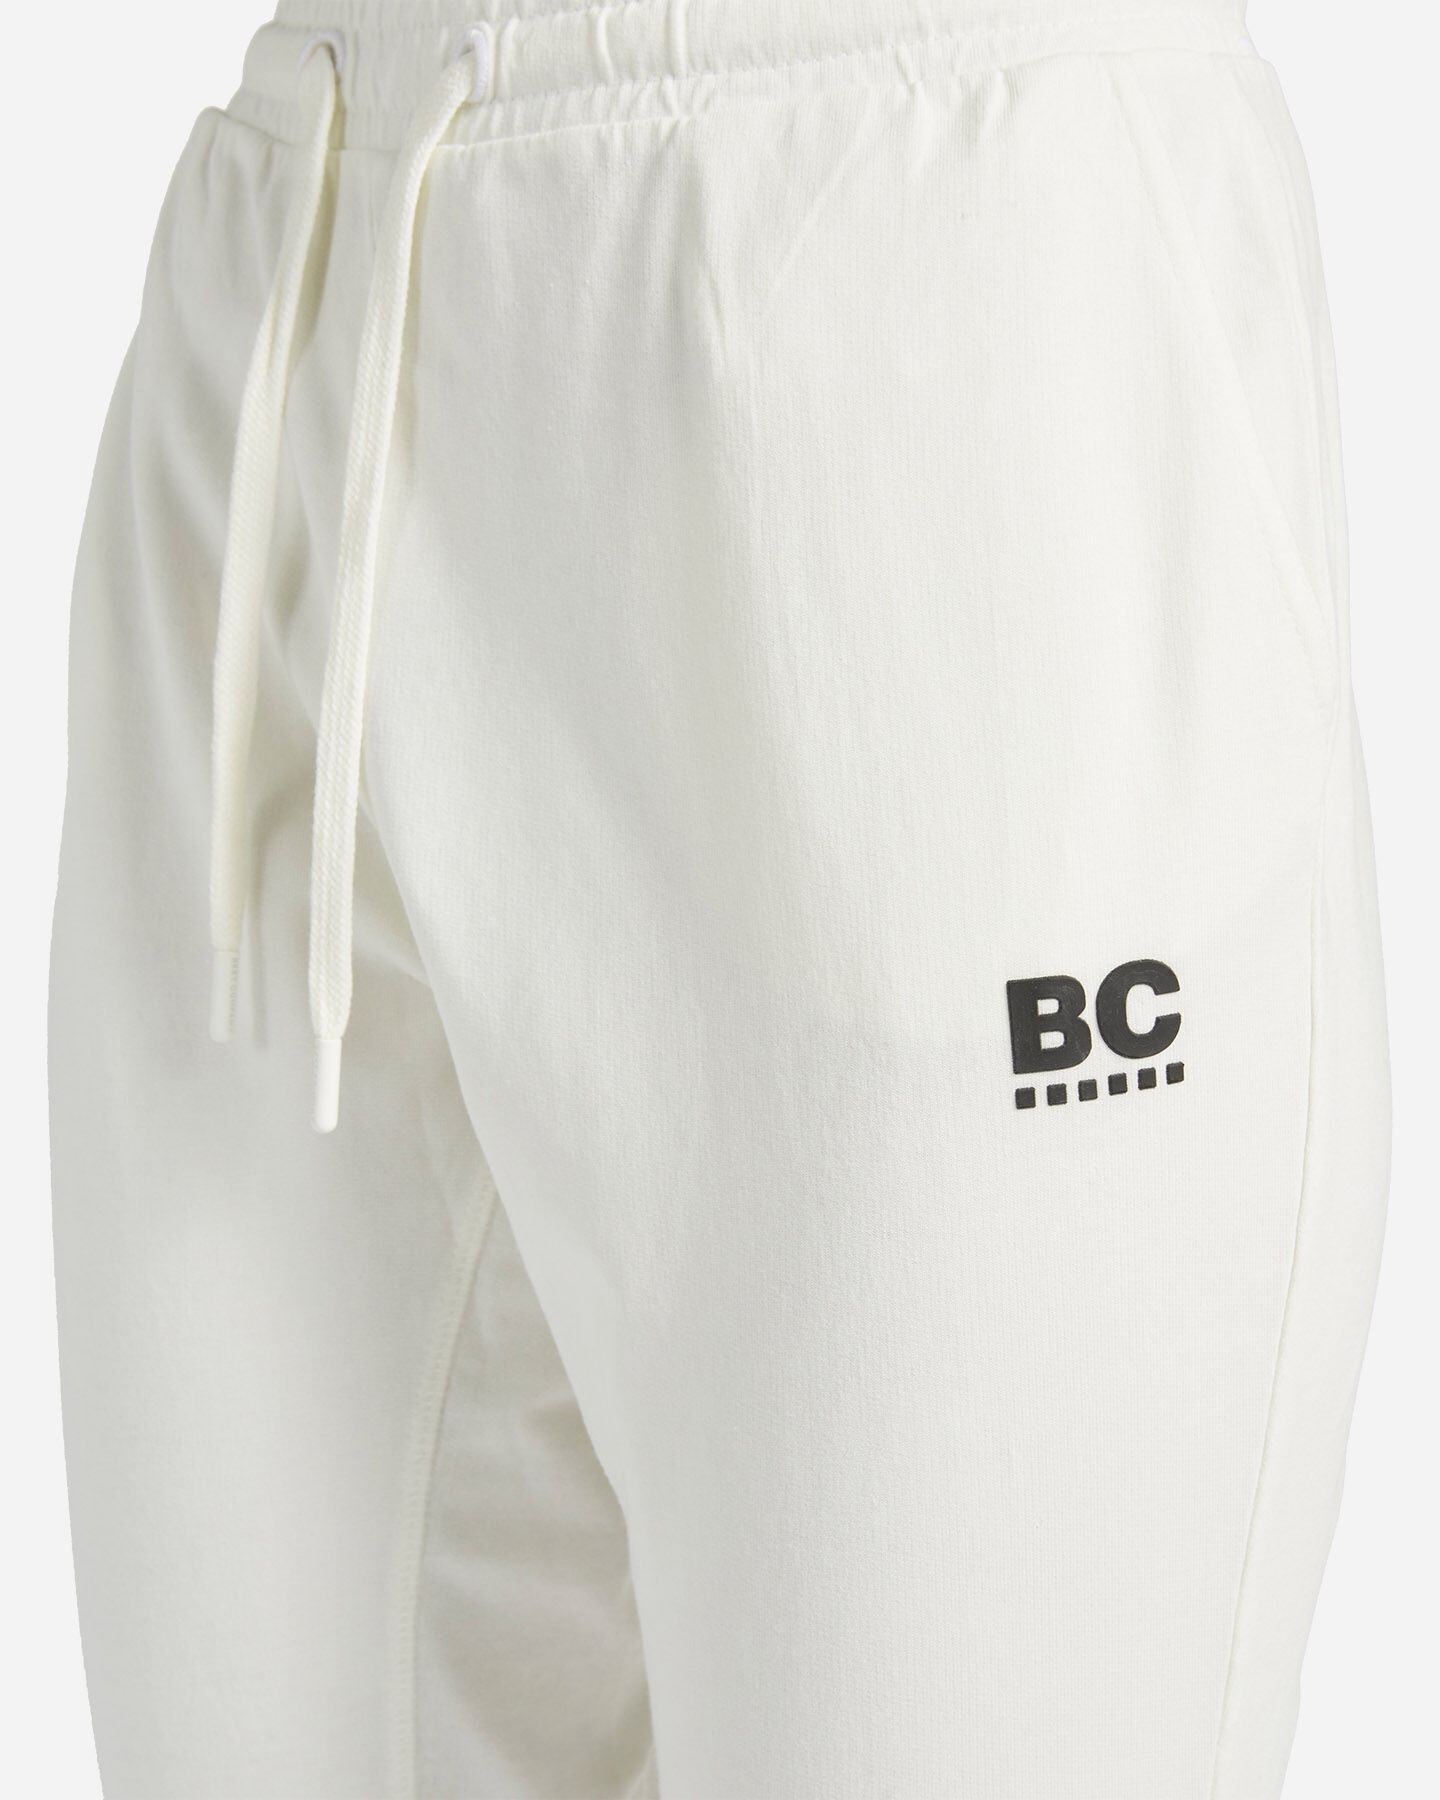  Pantalone BEST COMPANY CLASSIC W S4104112|001C|S scatto 3